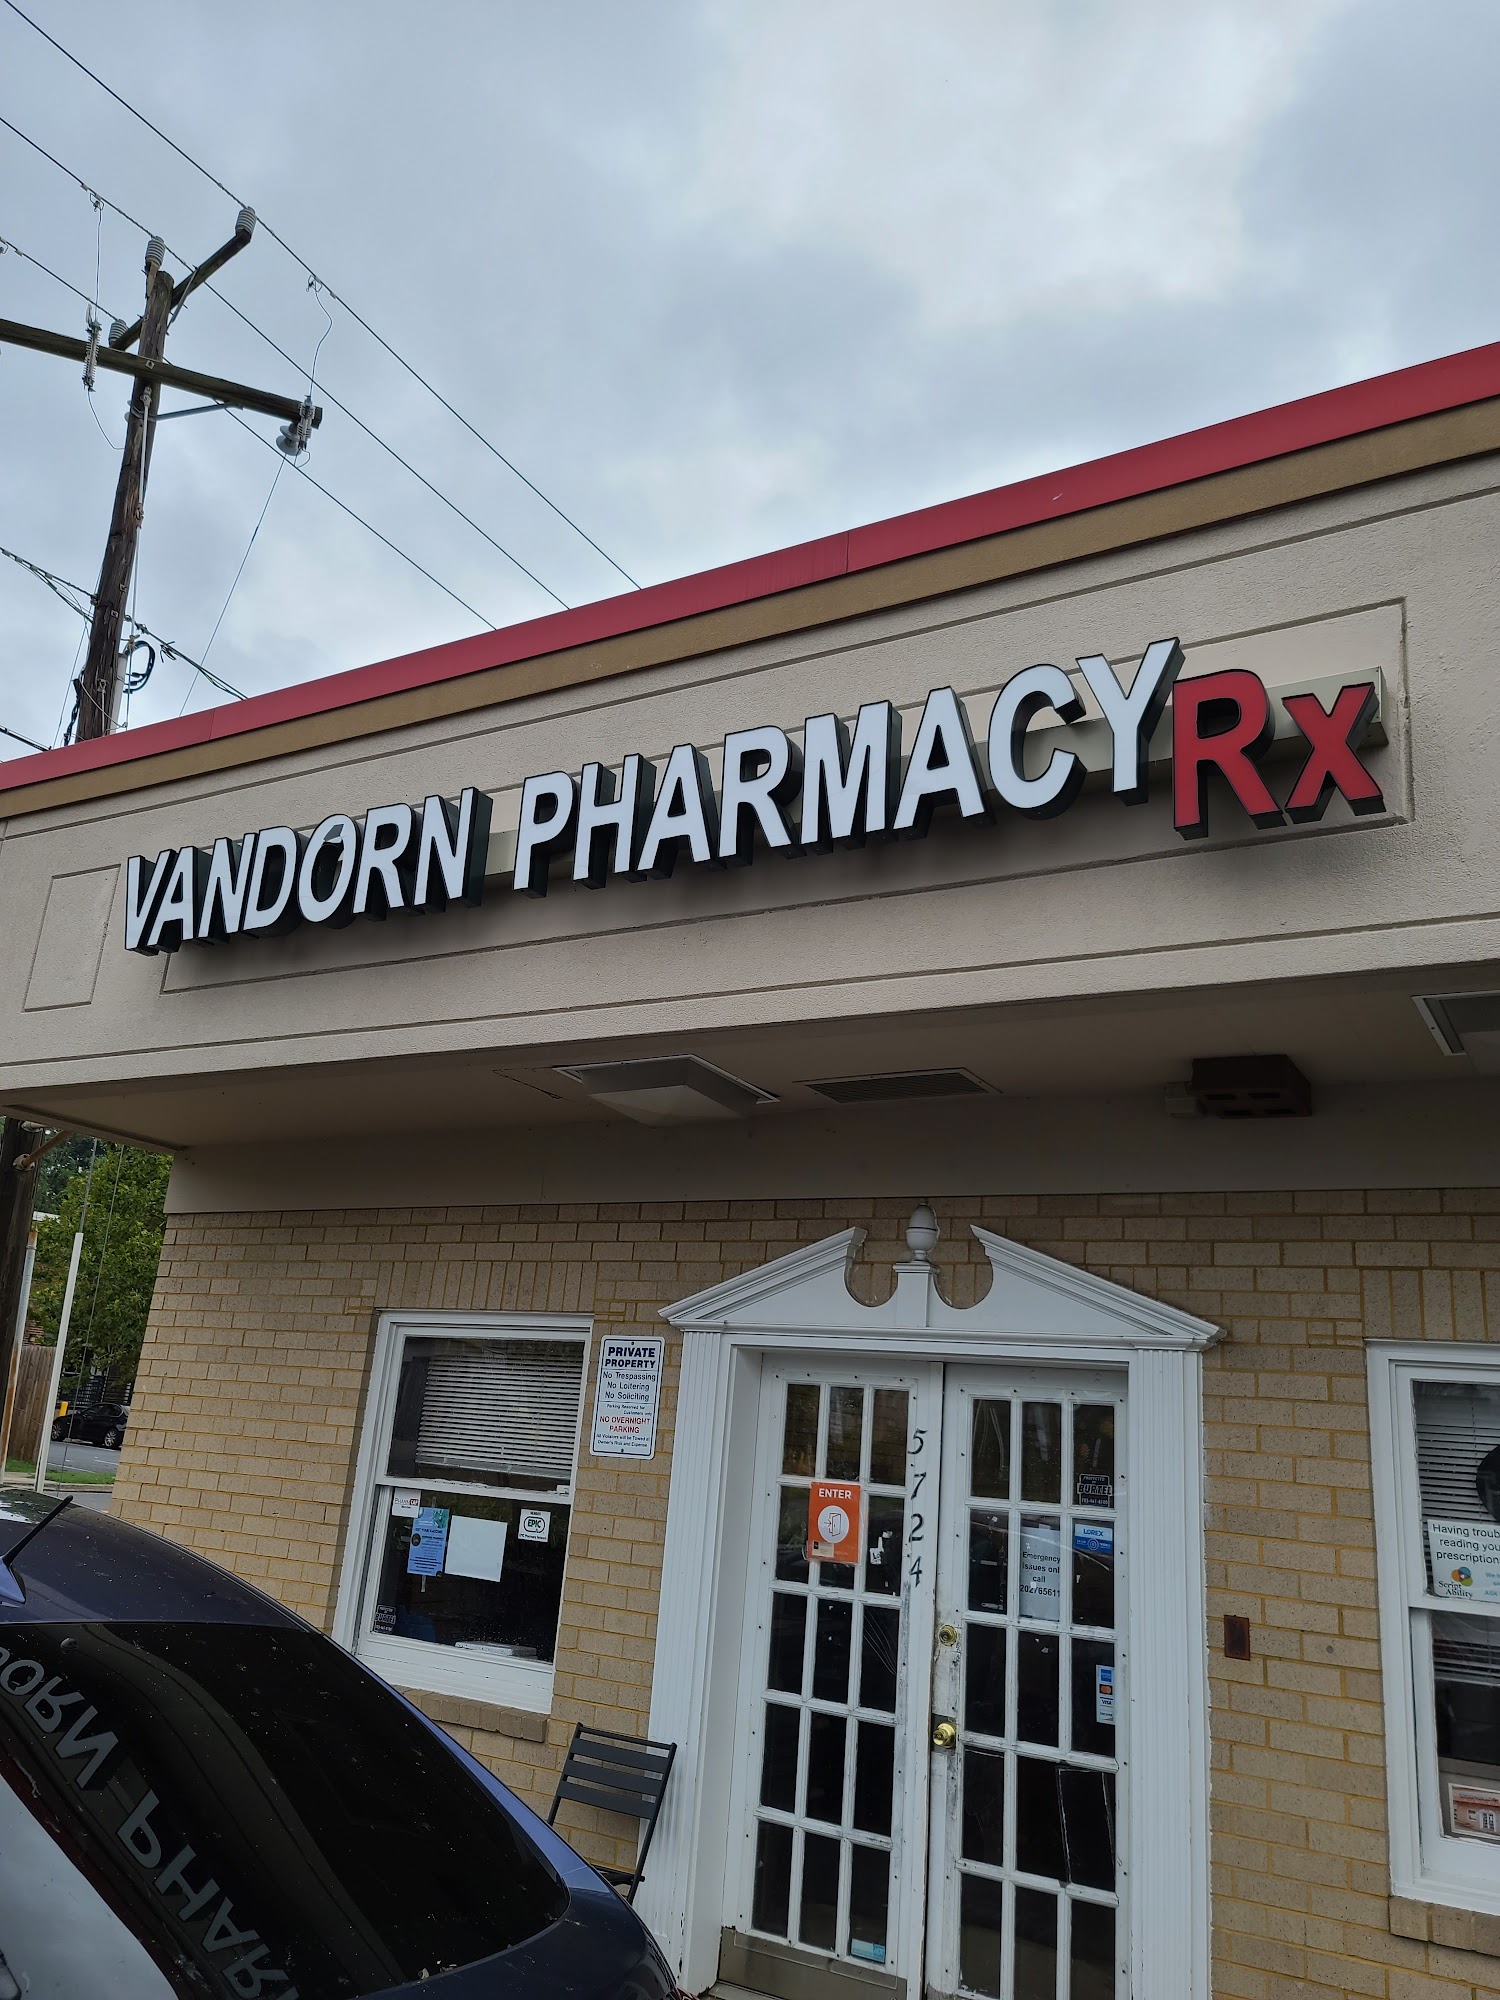 VanDorn Pharmacy